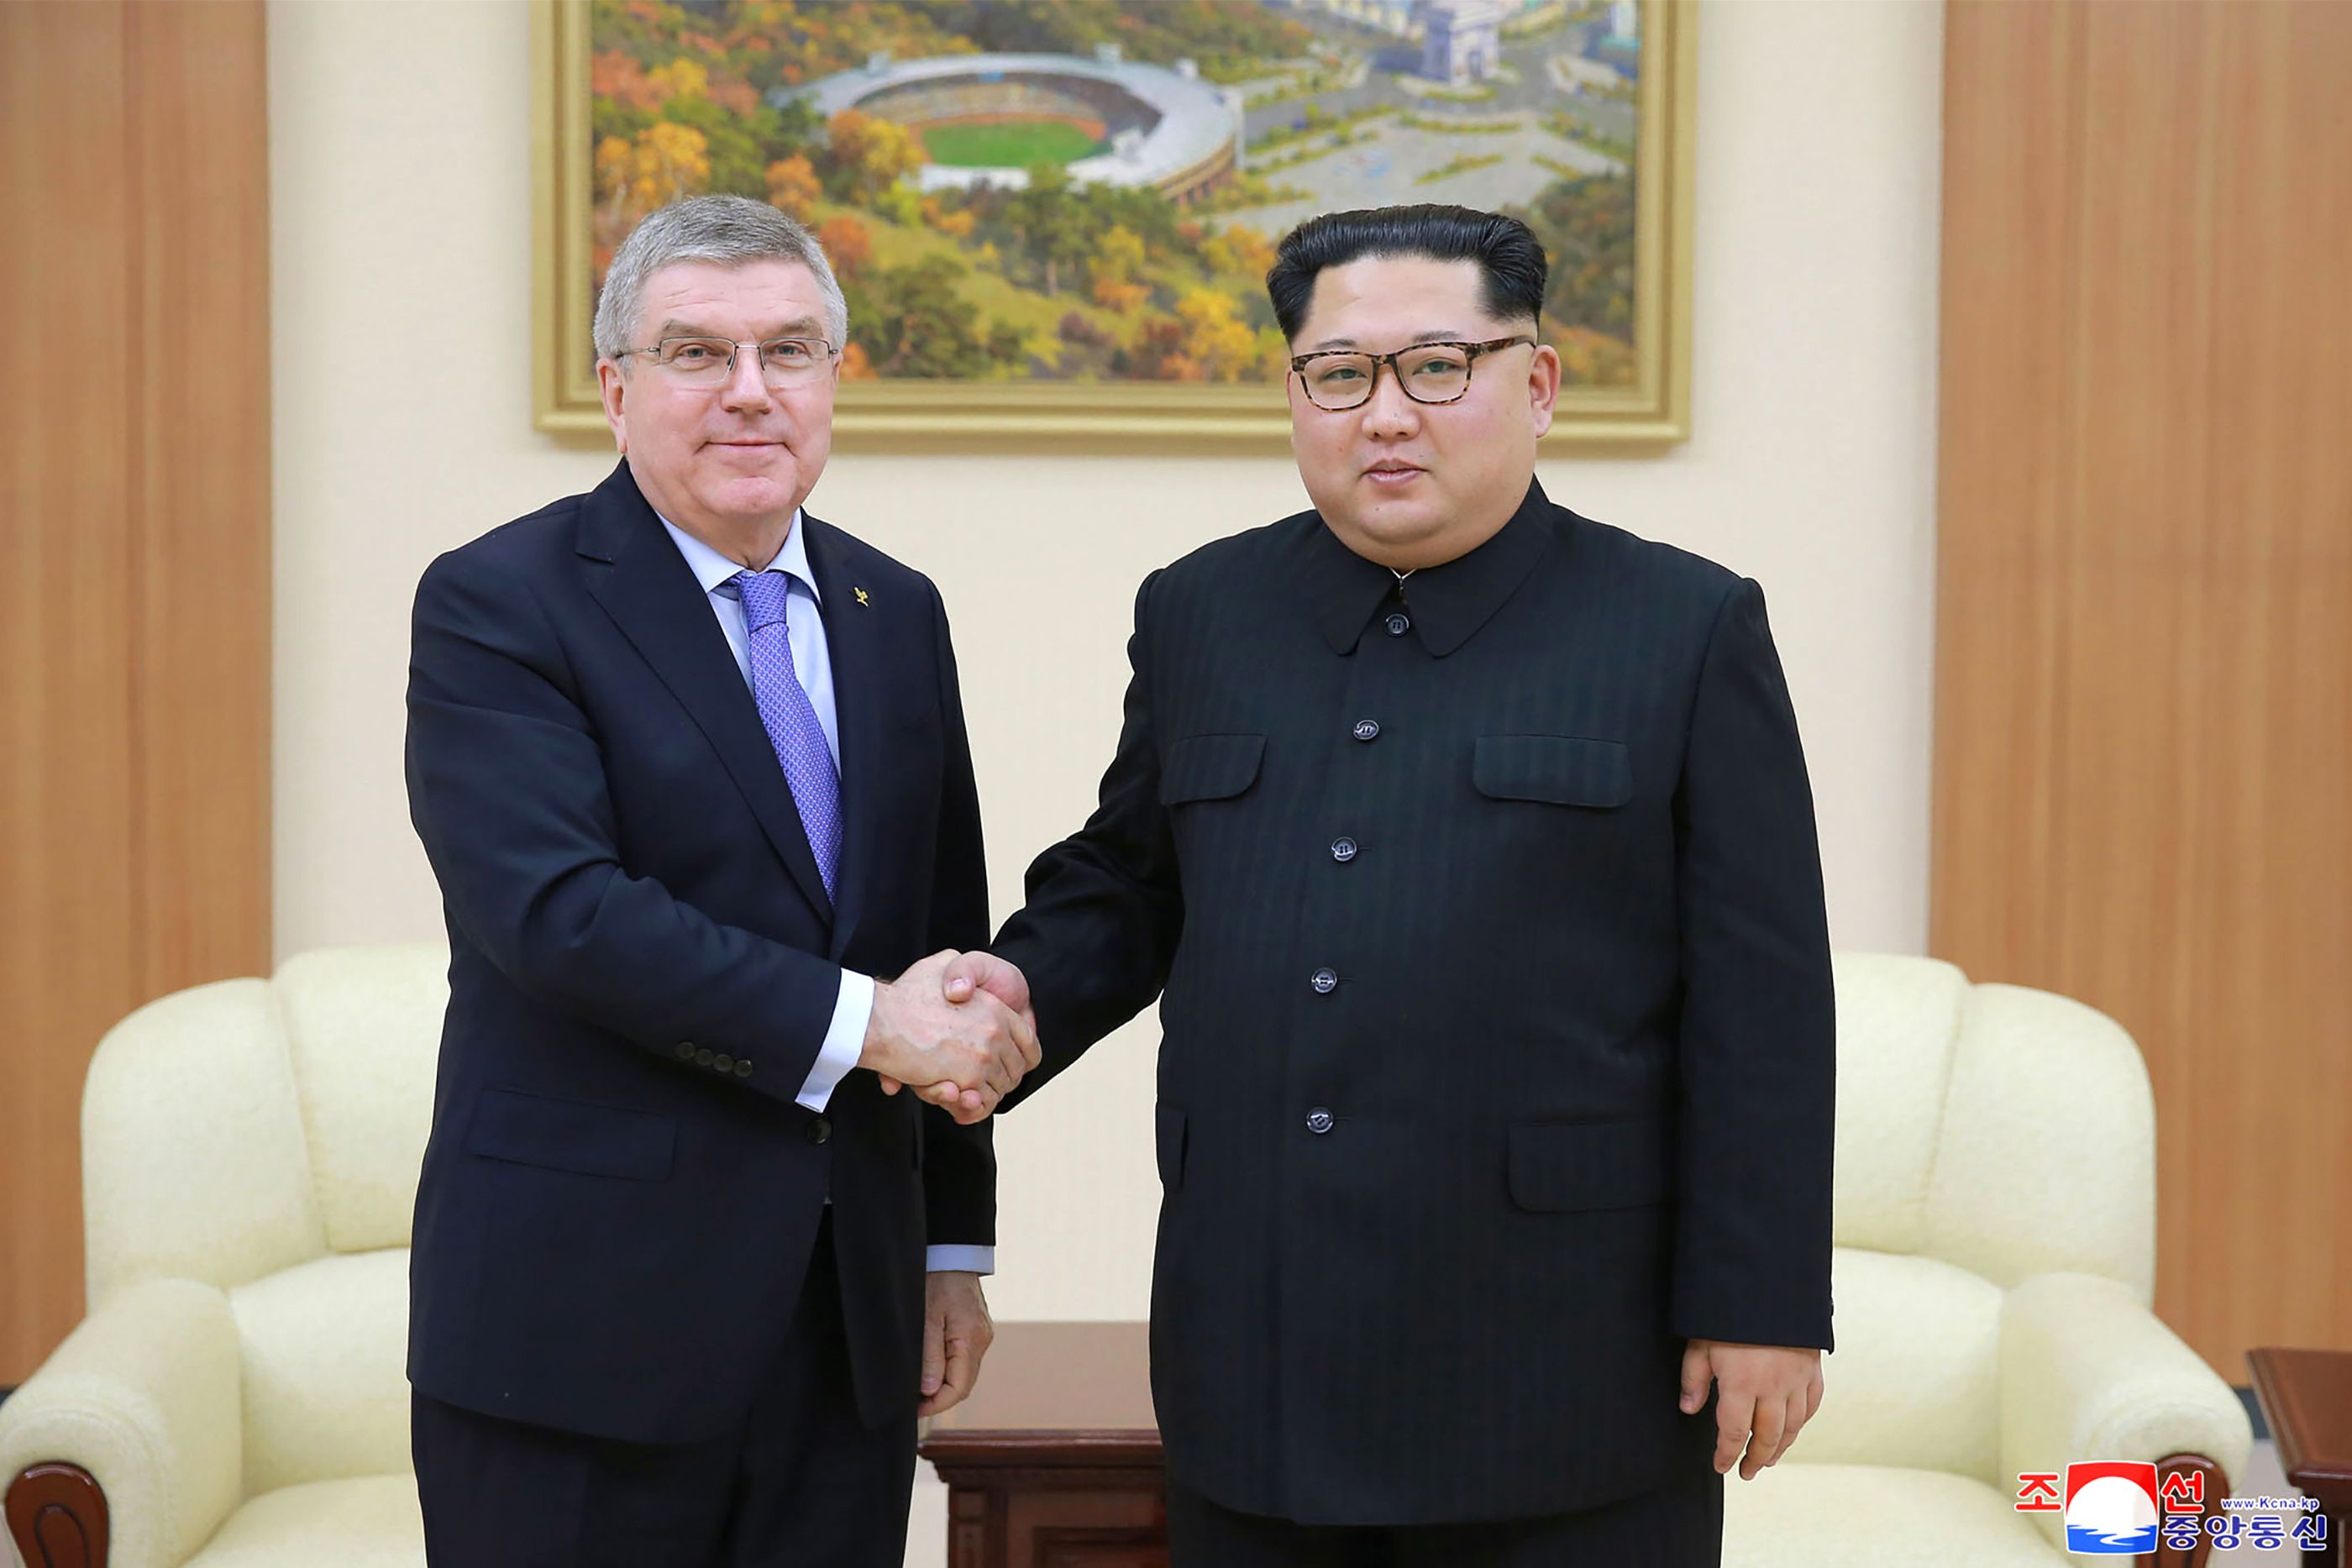 زعيم كوريا الشمالية يصافح رئيس اللجنة الأولمبية